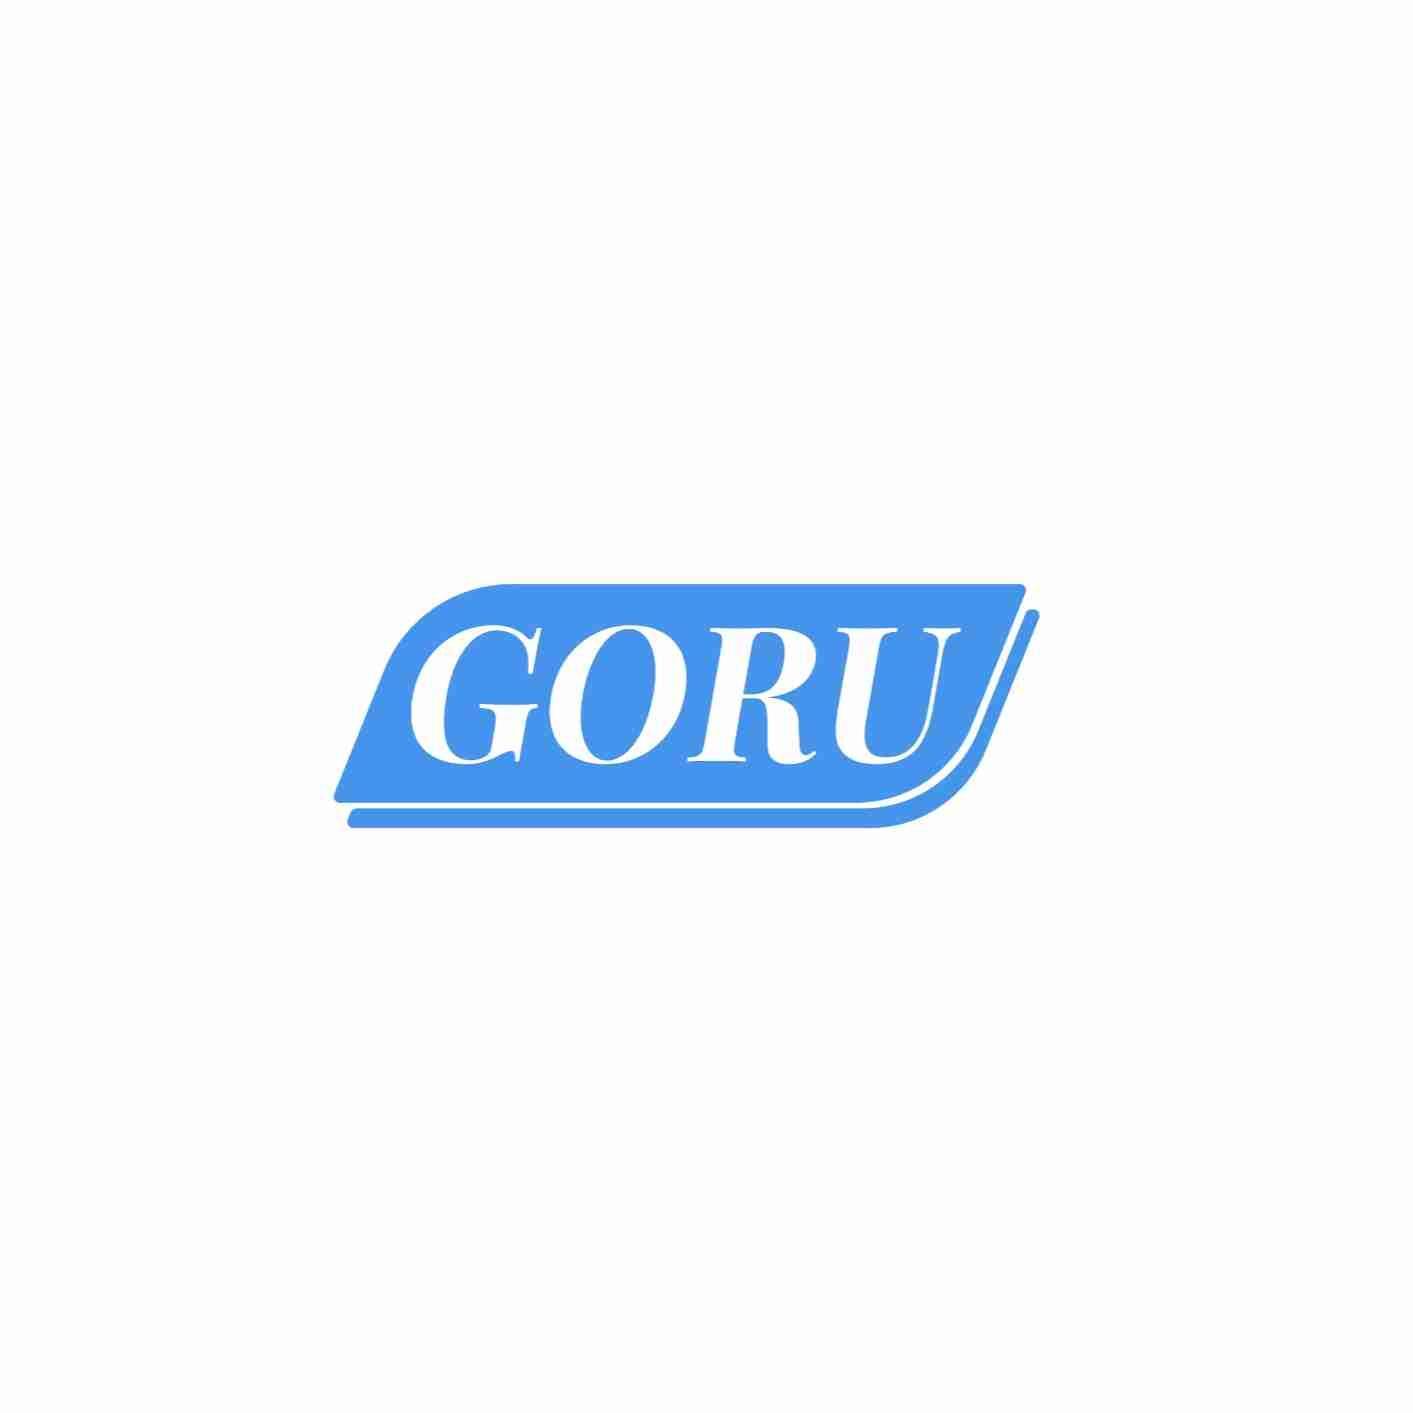 GORU